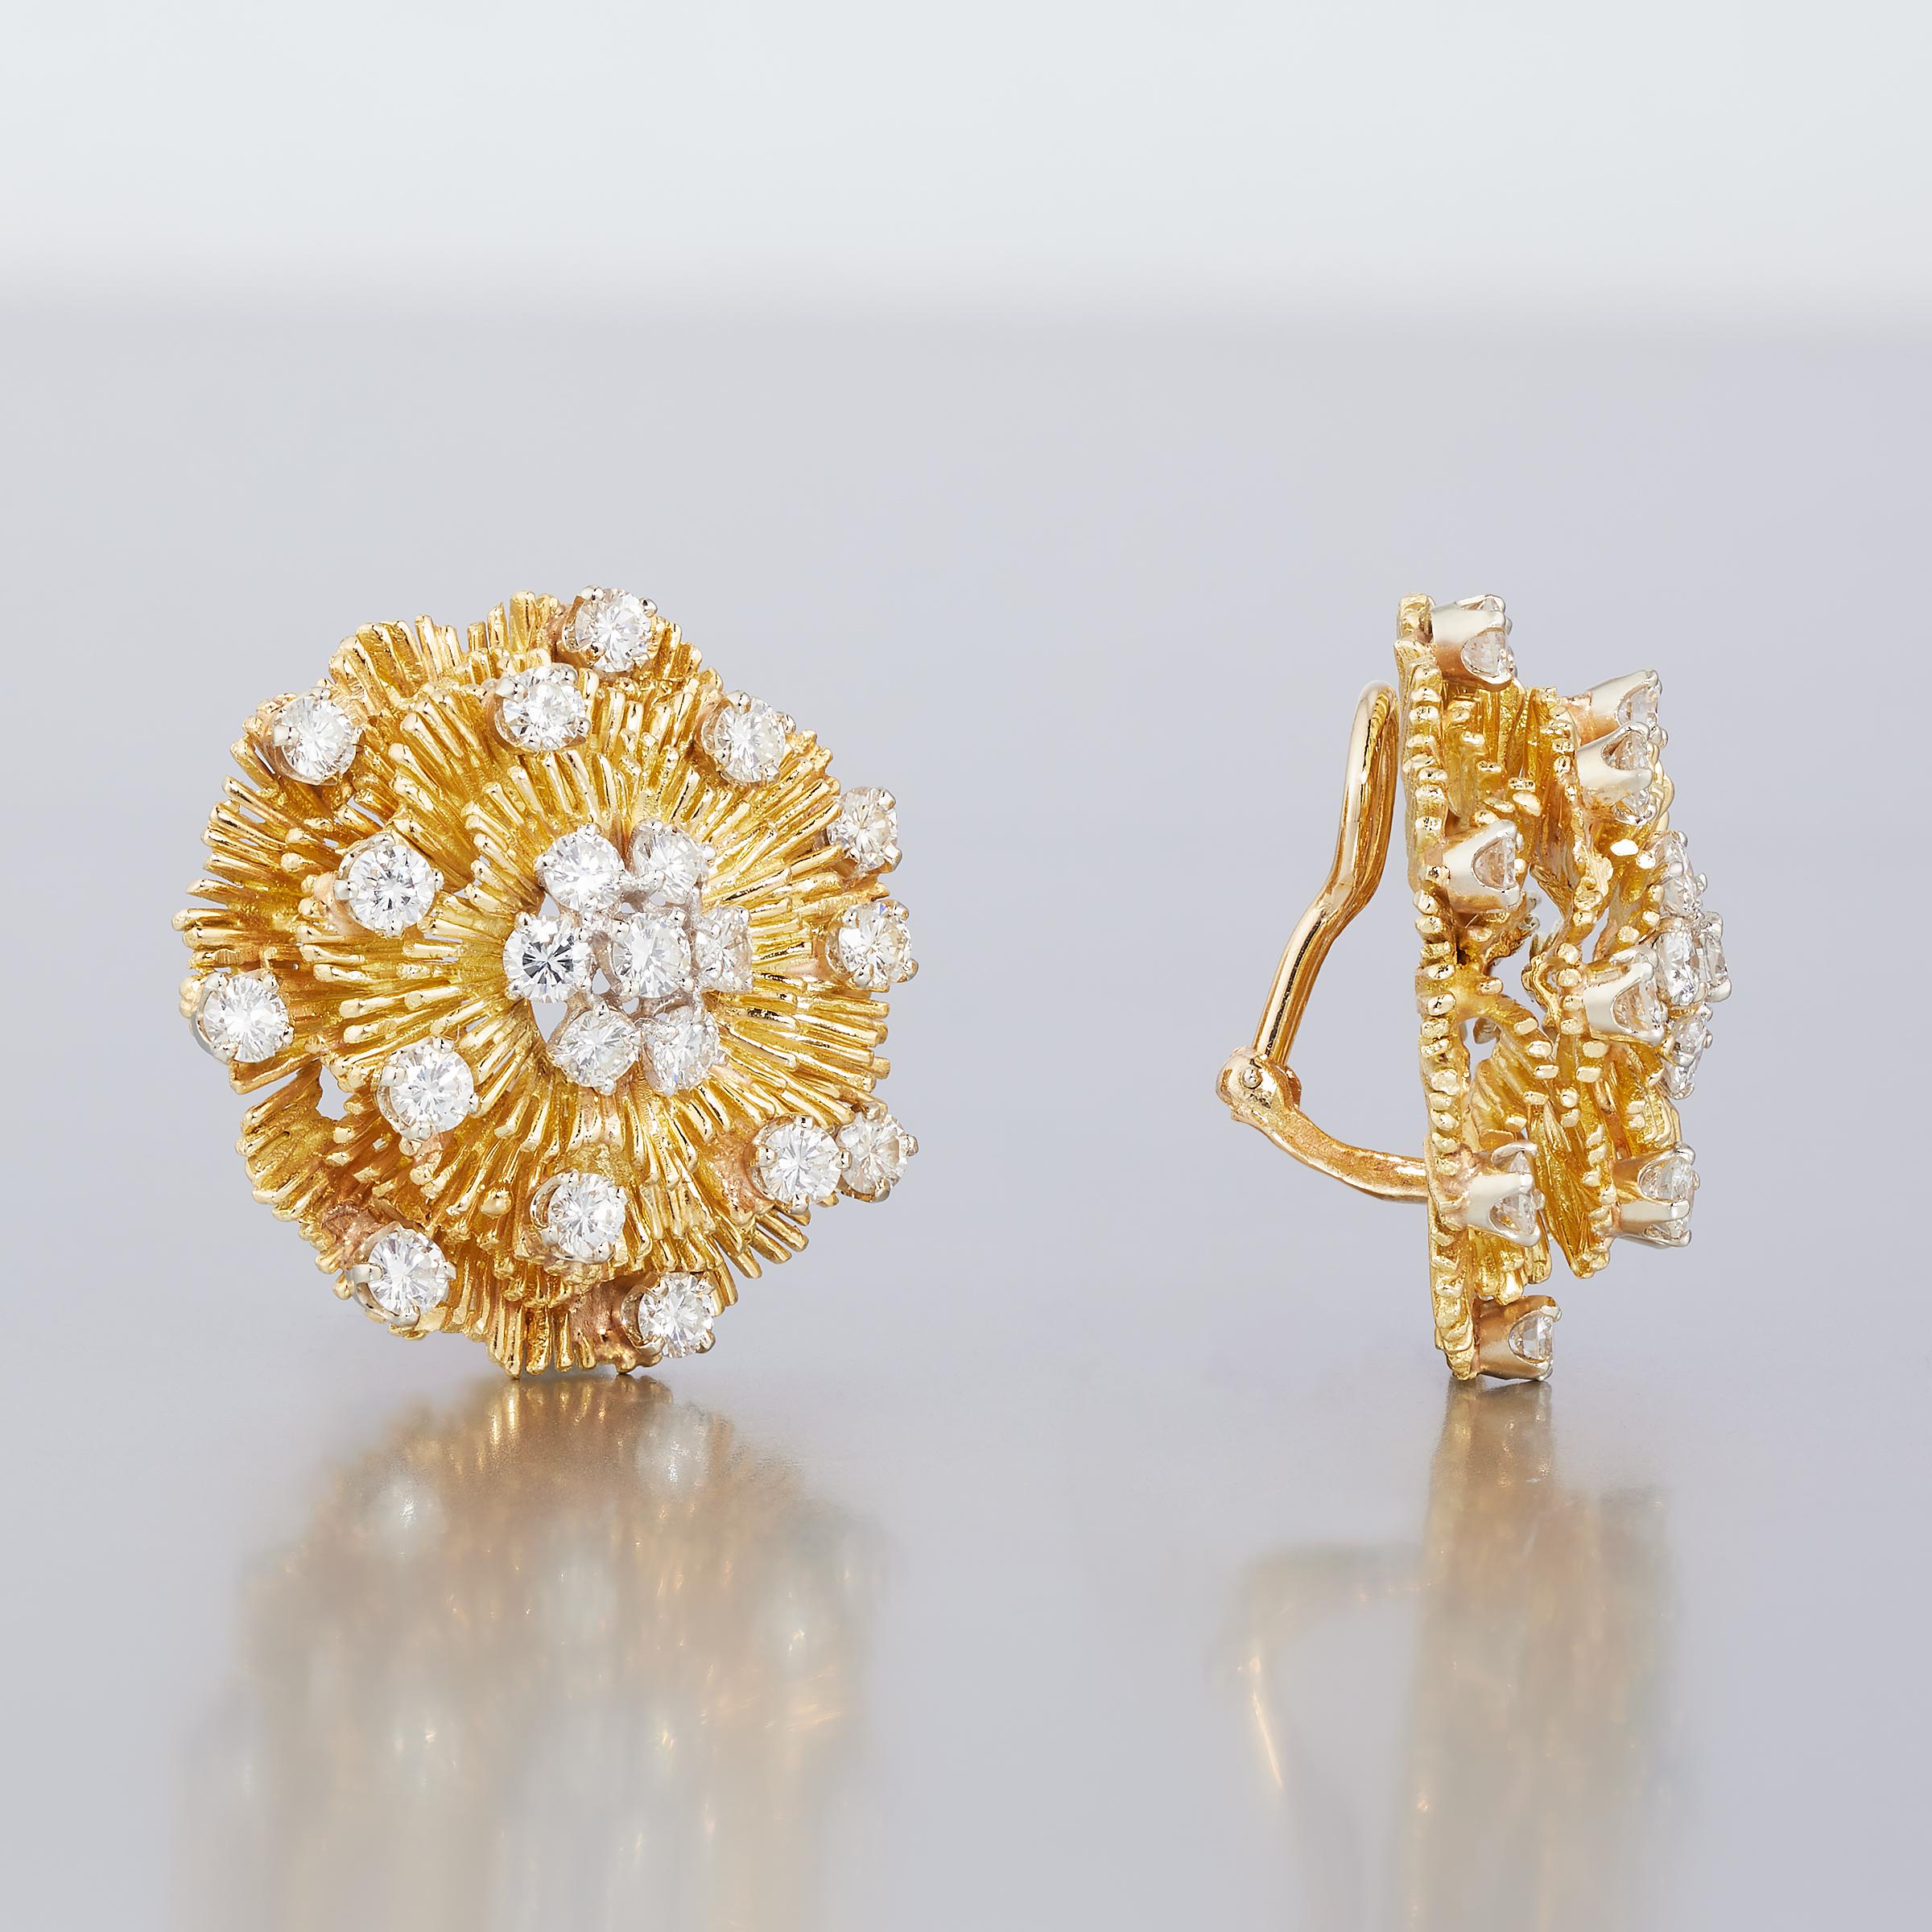 Exceptionnelle paire de boucles d'oreilles des frères Hammerman, datant du milieu du siècle, rayonnant de l'éclat d'environ 5 carats de diamants de haute qualité parsemés sur une base de fleur en or jaune 18 carats finement texturée et multicouche.